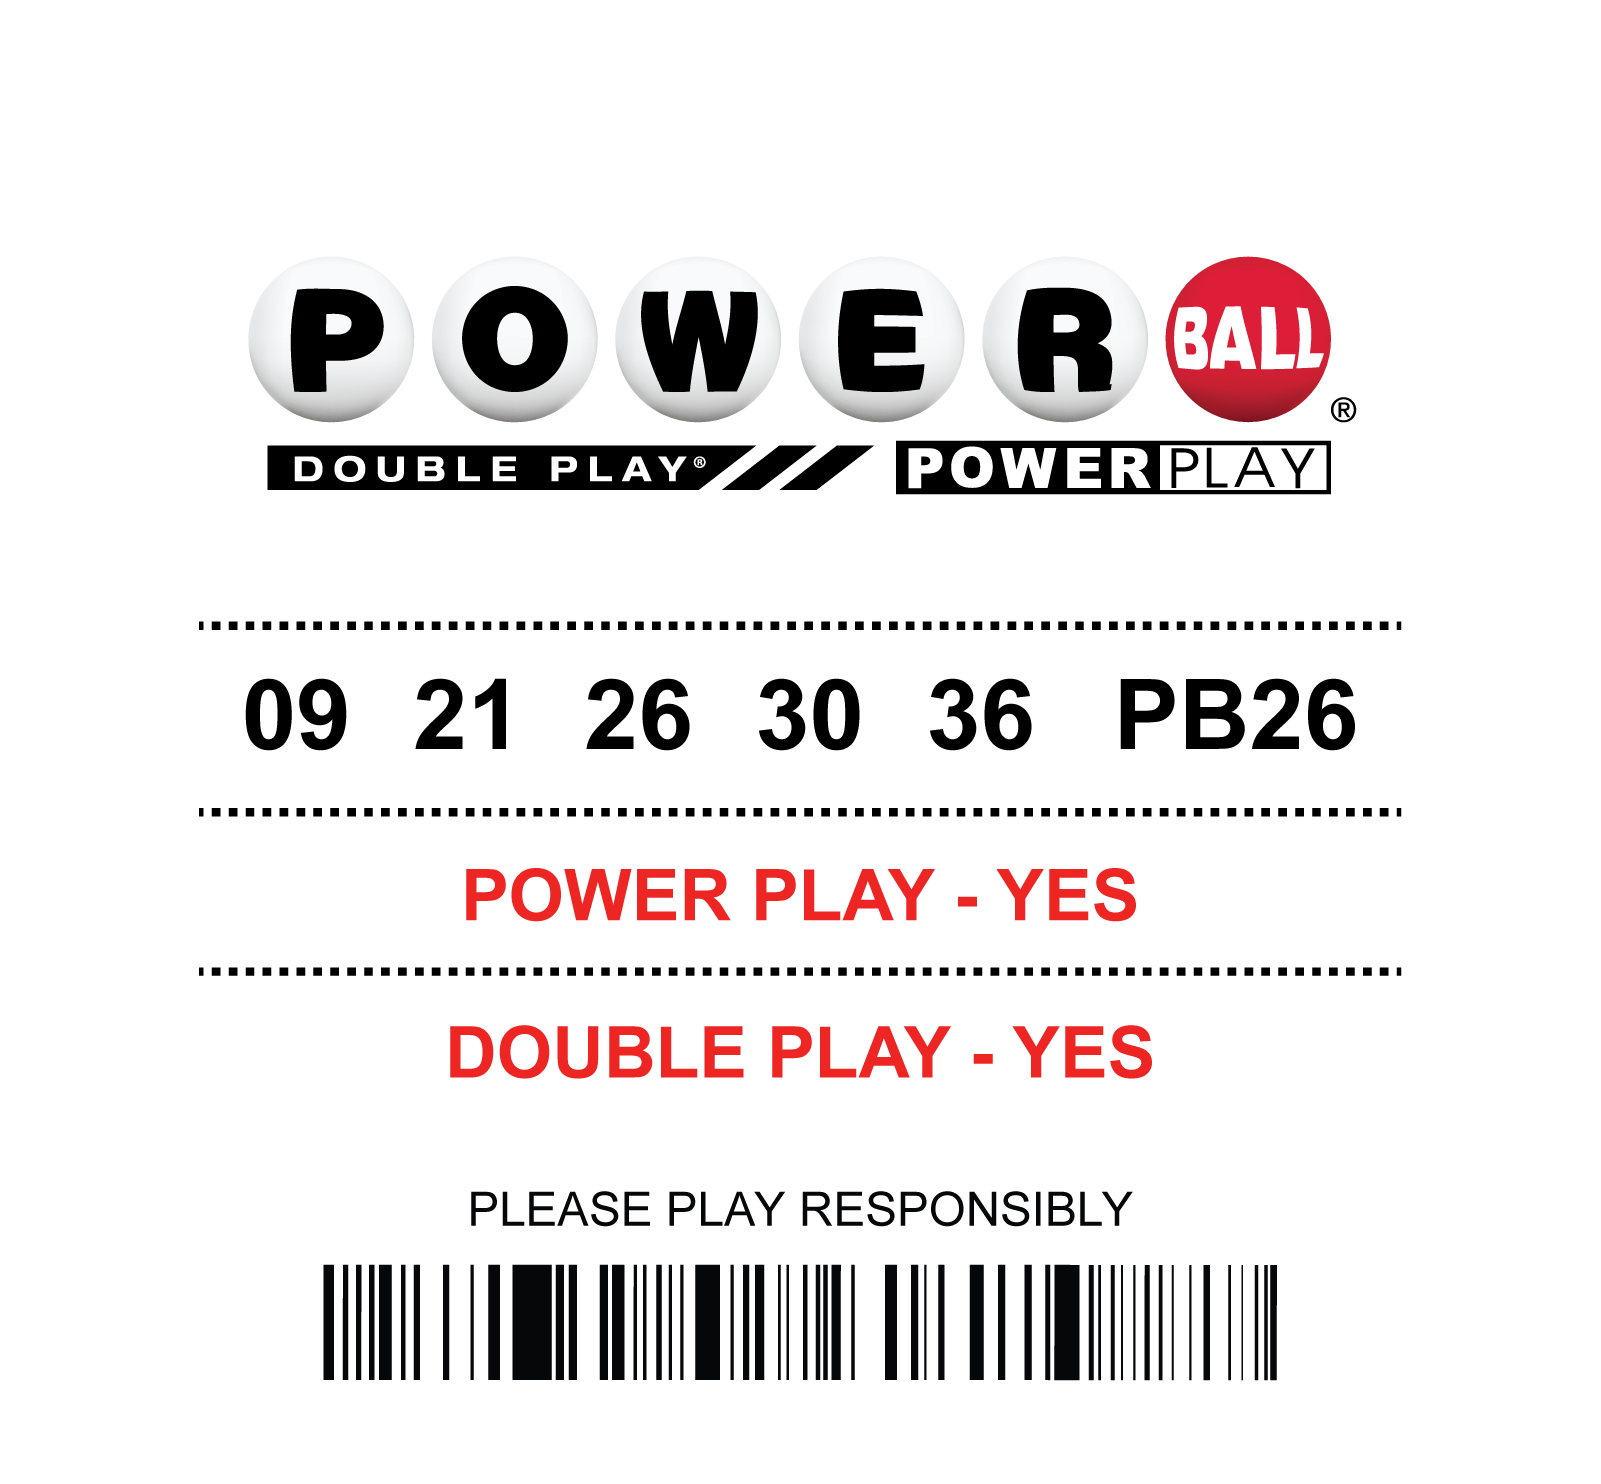 Powerball Drawing | Hoosier Lottery | Hoosier Lottery